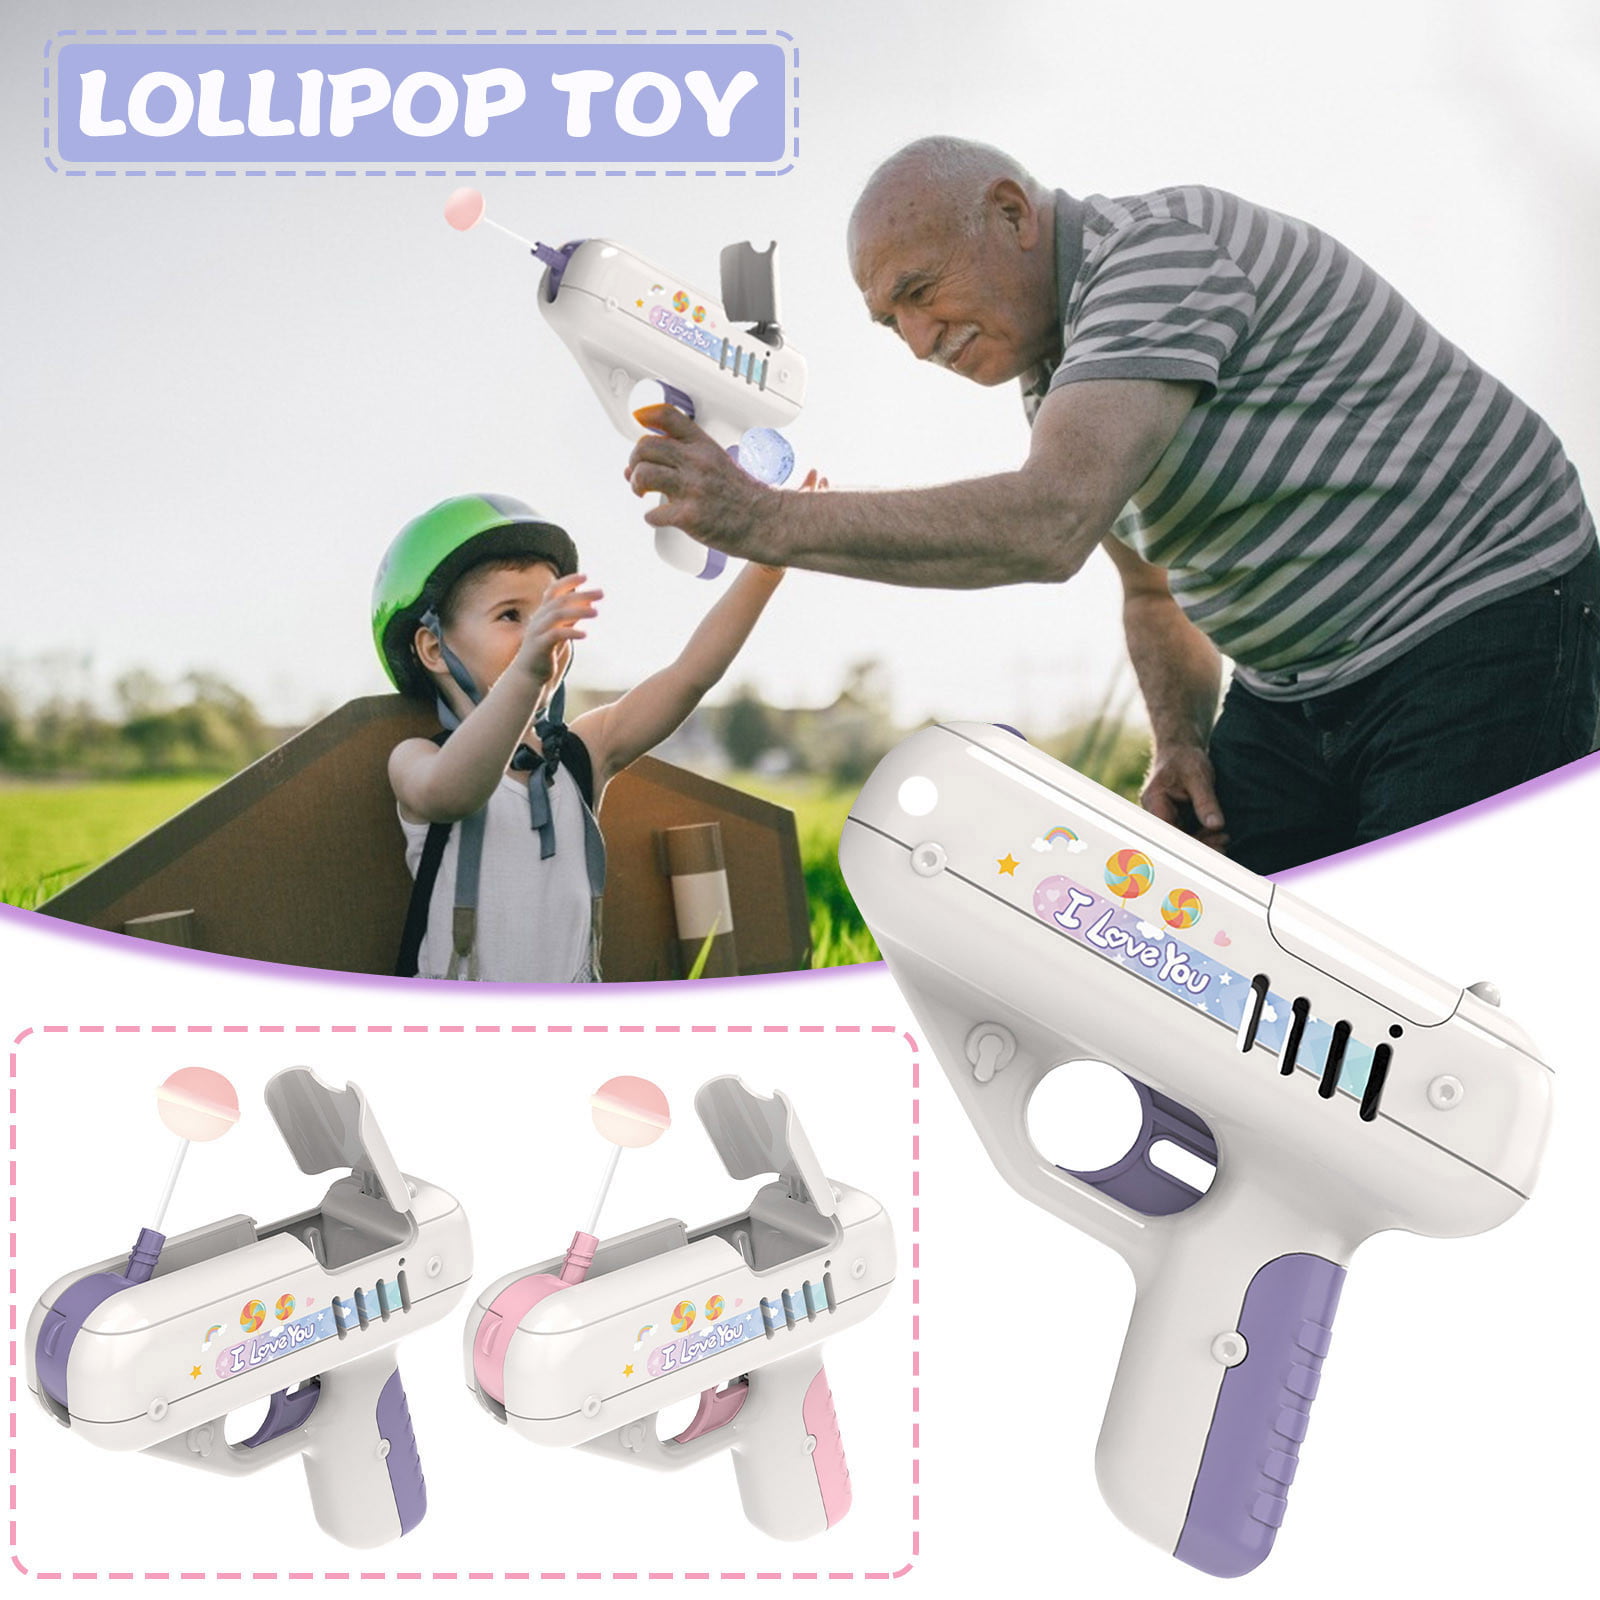 Details about   Lollipop Gun Children'S Candy Gun Toy Surprise Creative Boy Girl Gift In Box 